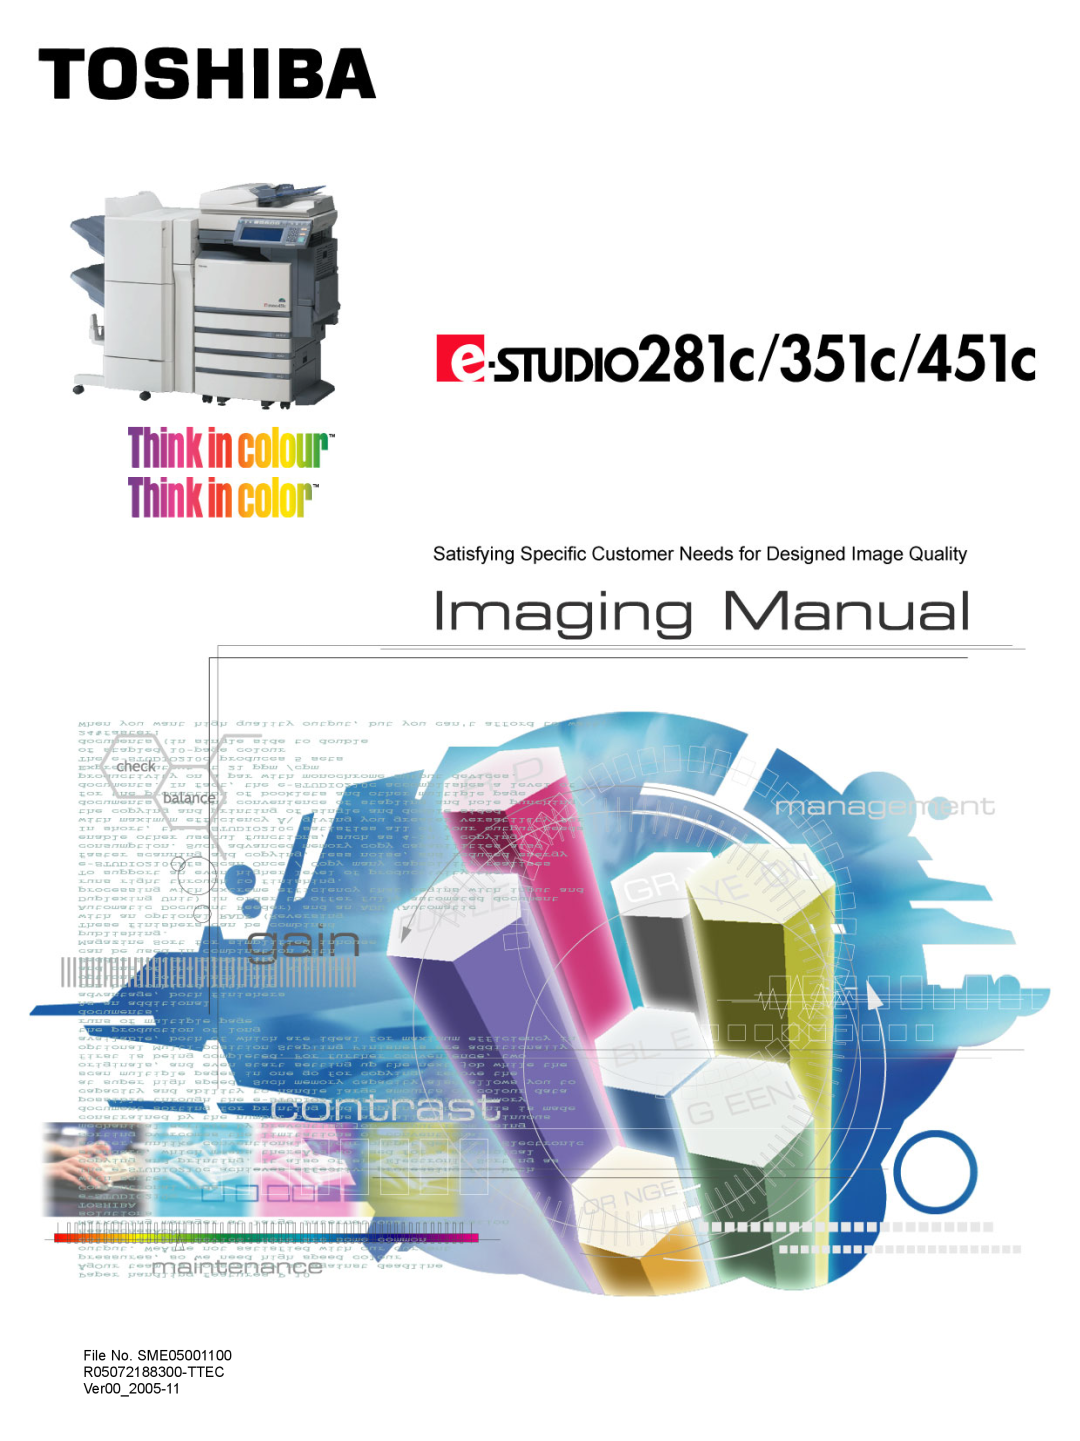 Toshiba 351C, 451C, e-STUDIO281c manual File No. SME05001100 R05072188300-TTEC Ver002005-11 